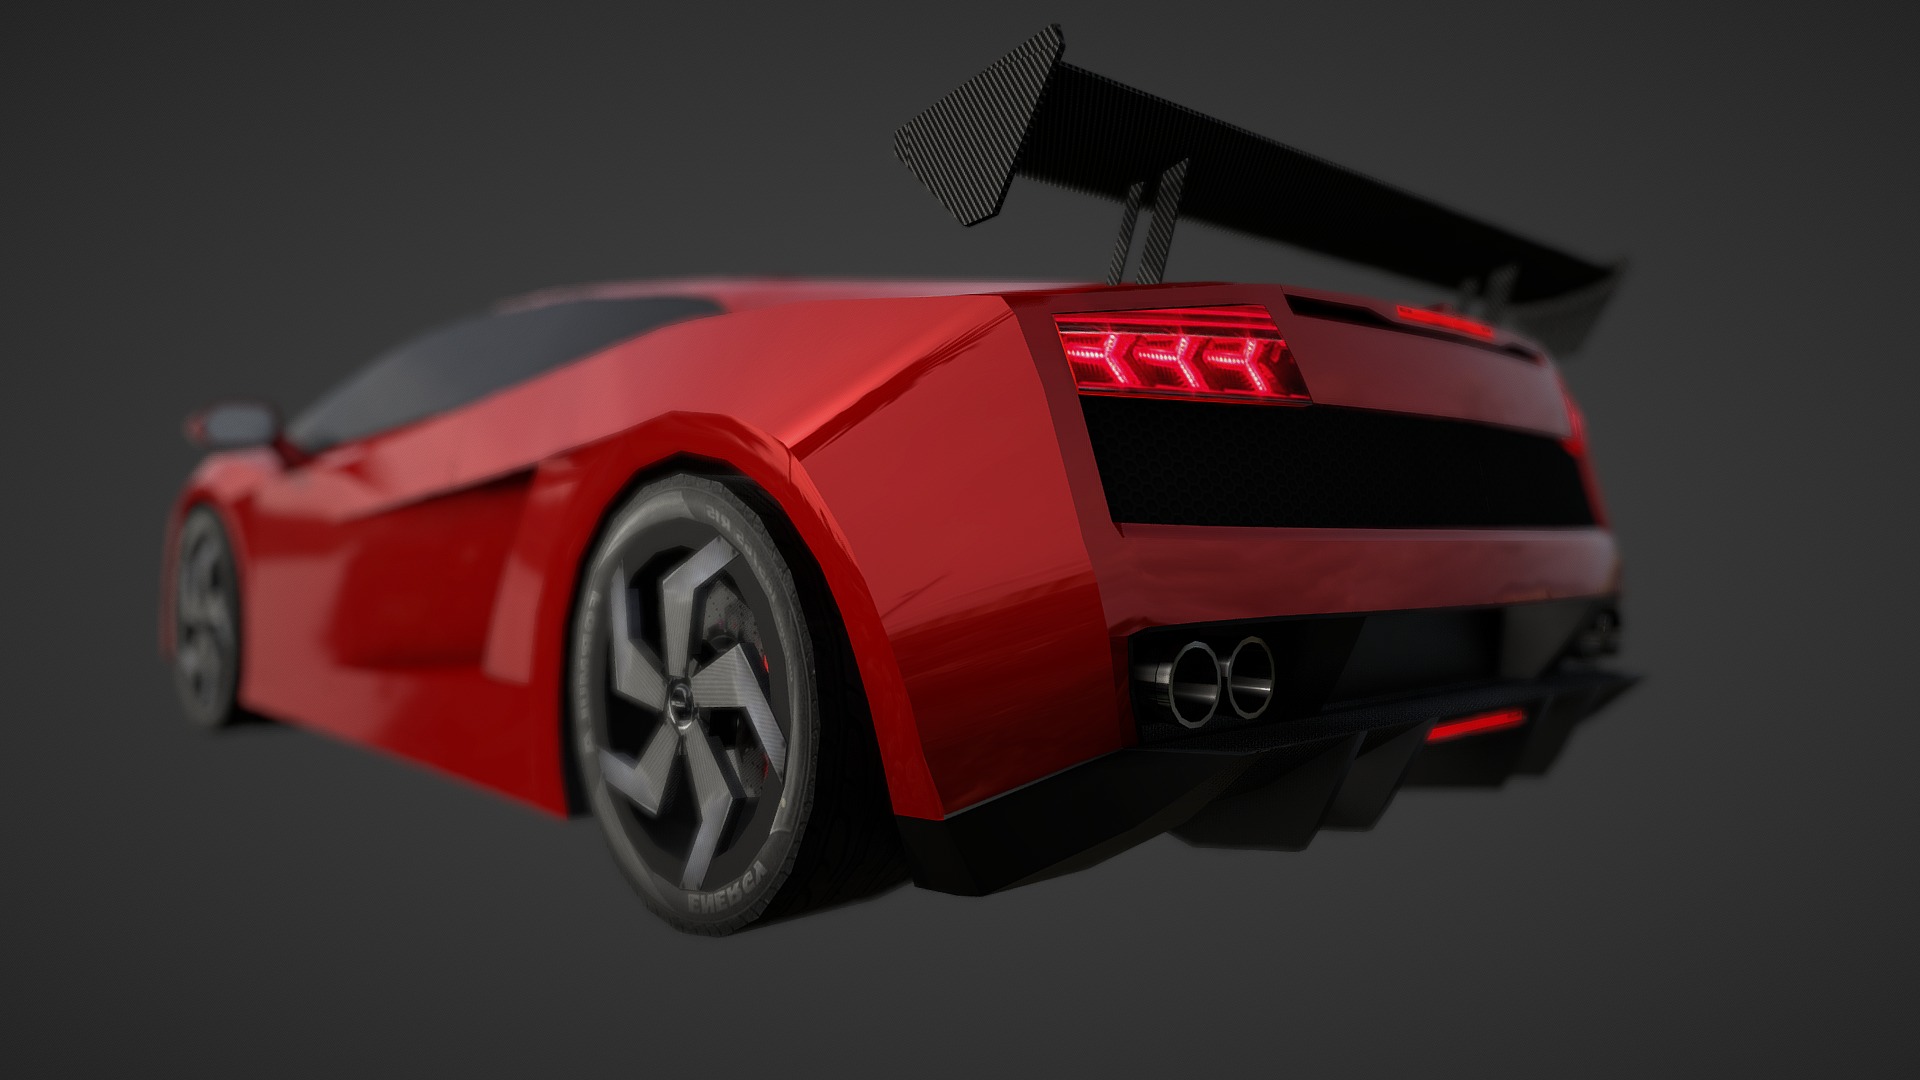 3D model Lamborghini Gallardo - This is a 3D model of the Lamborghini Gallardo. The 3D model is about a red sports car.